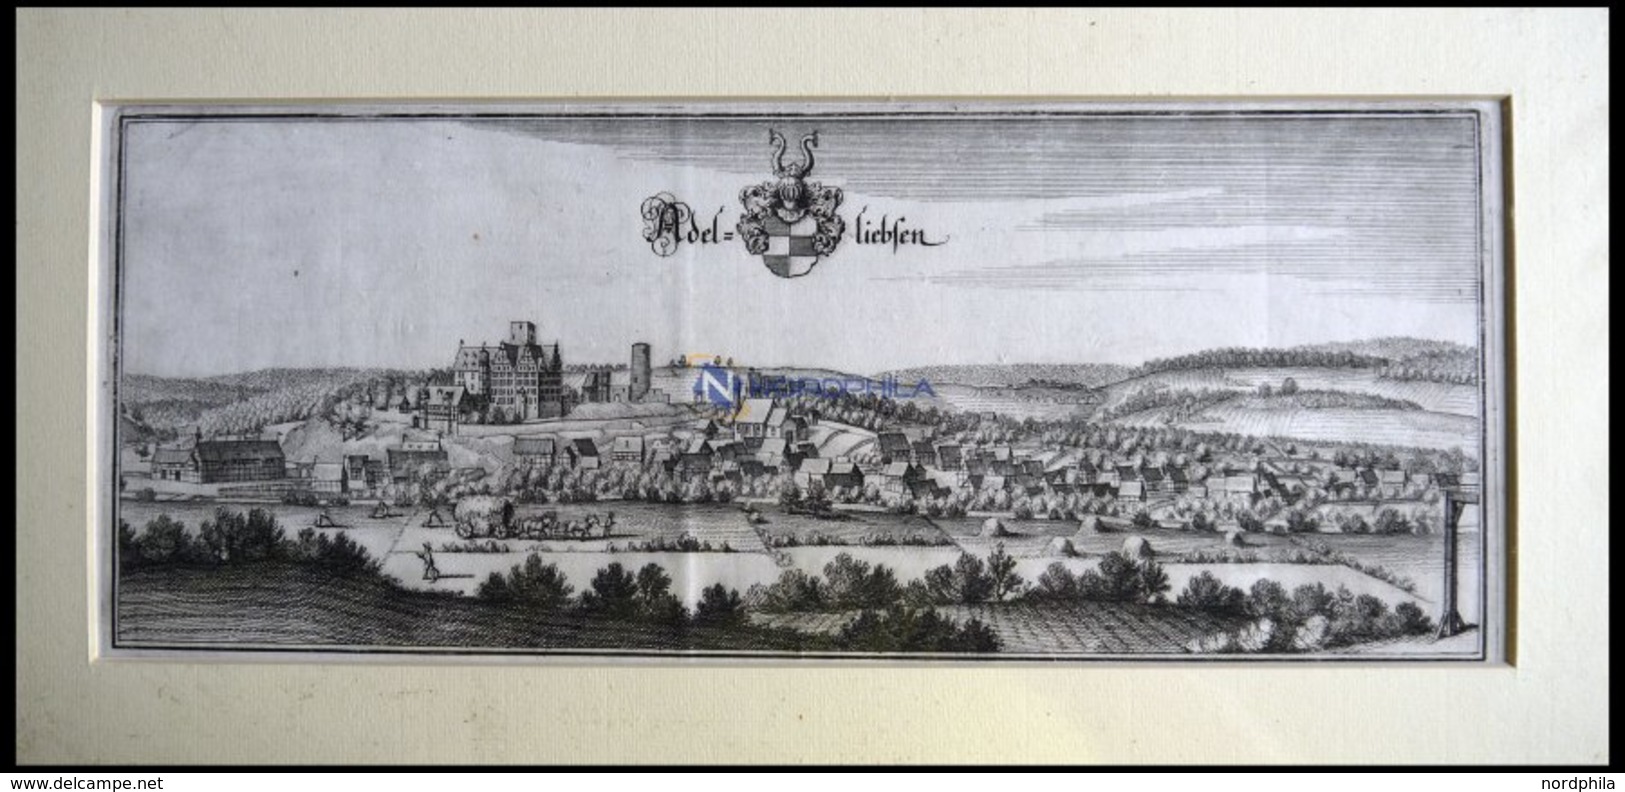 ADELEBSEN, Gesamtansicht, Kupferstich Von Merian Um 1645 - Litografia